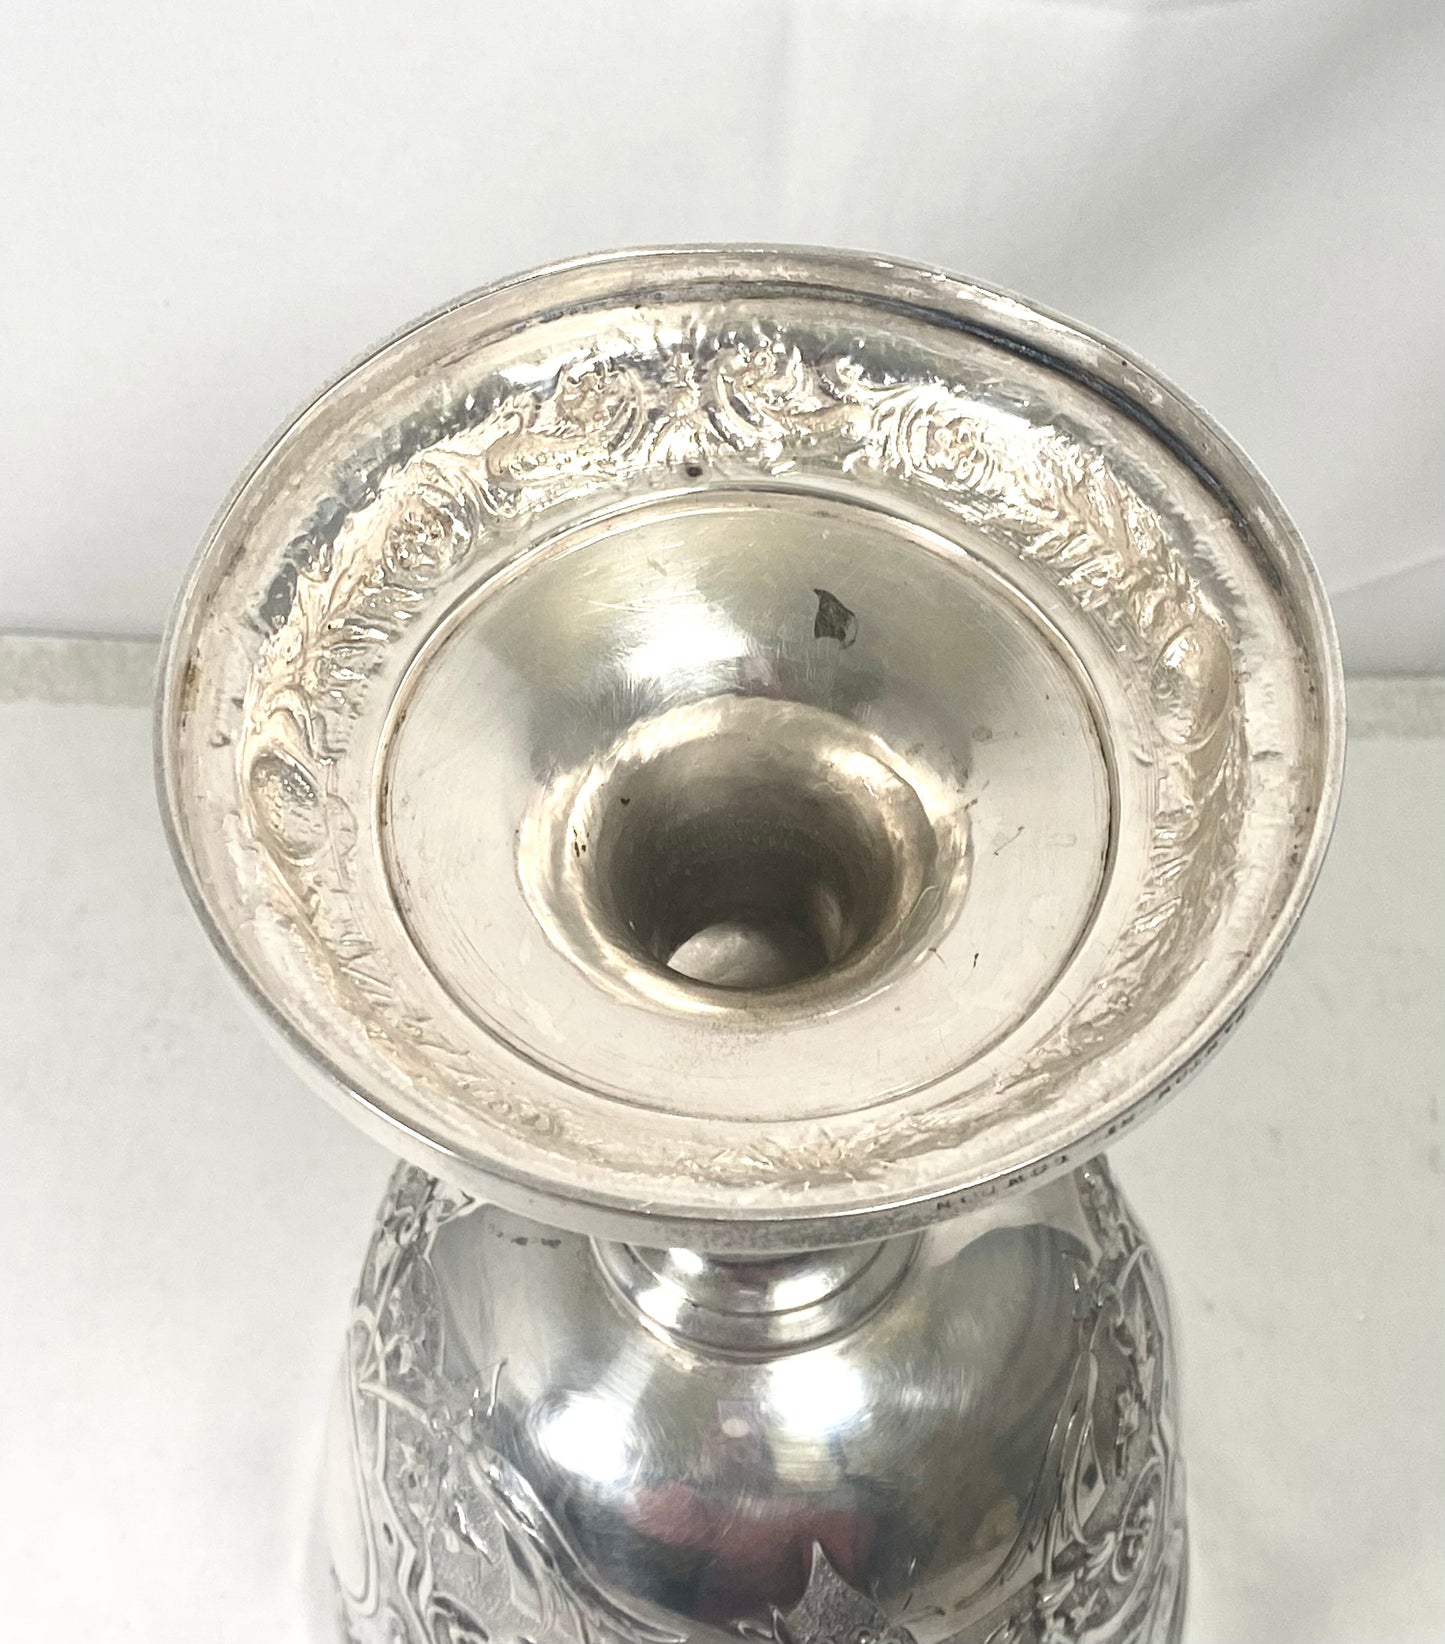 具有纪念意义和非凡意义的高维多利亚风格 R &amp; S Garrard of London 颁奖杯/奖杯高脚杯，伦敦 1877 年。厚度适中，标记清晰。593 克。